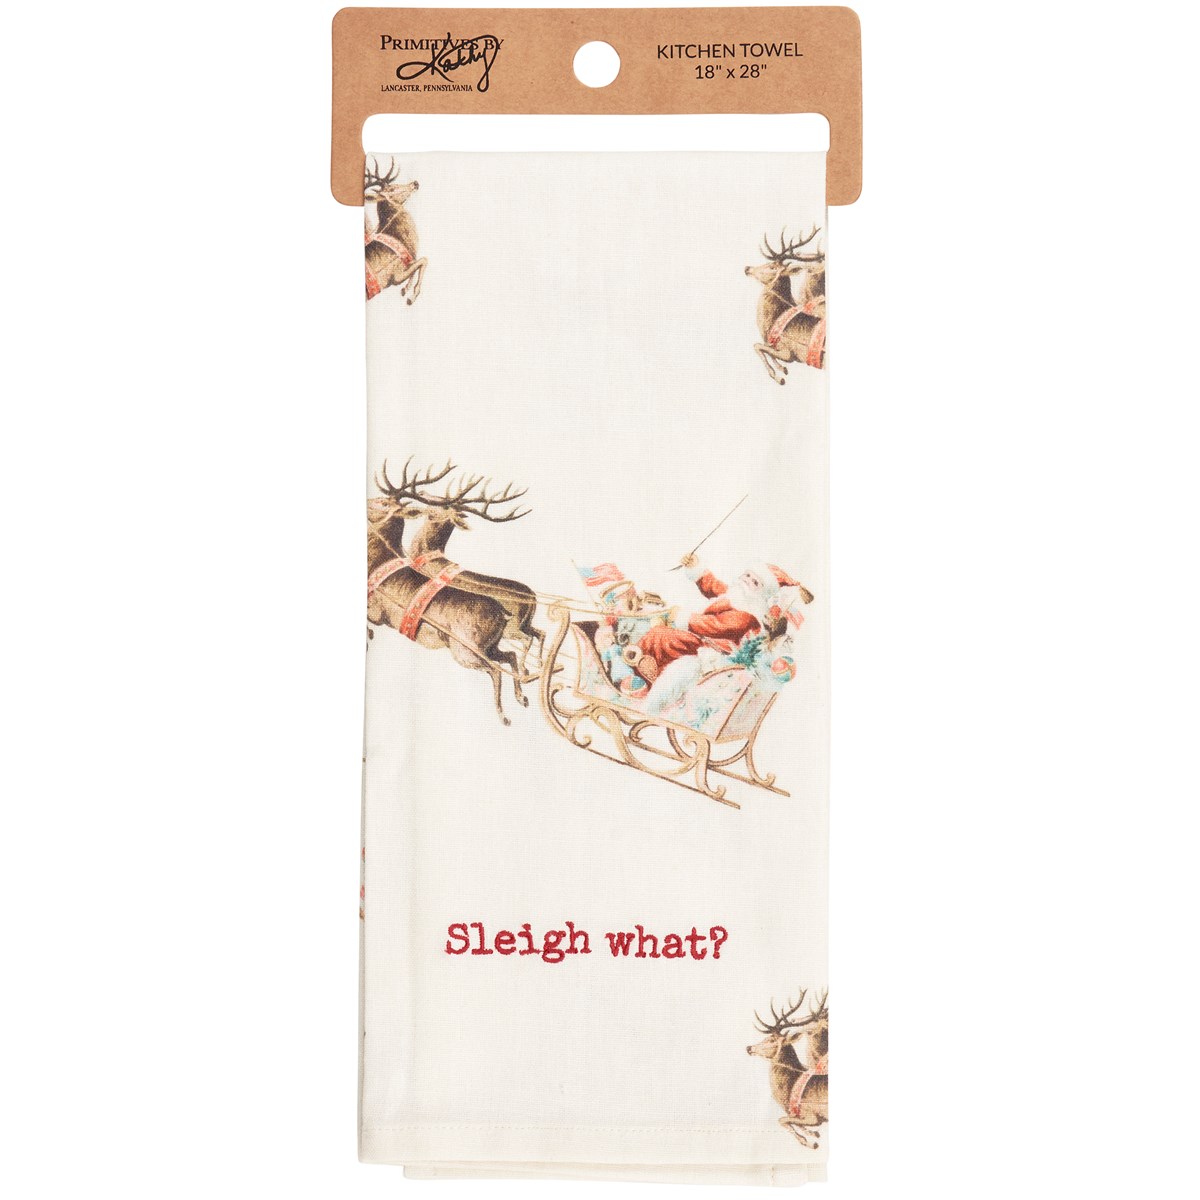 Sleigh What? Kitchen Towel - Cotton, Linen